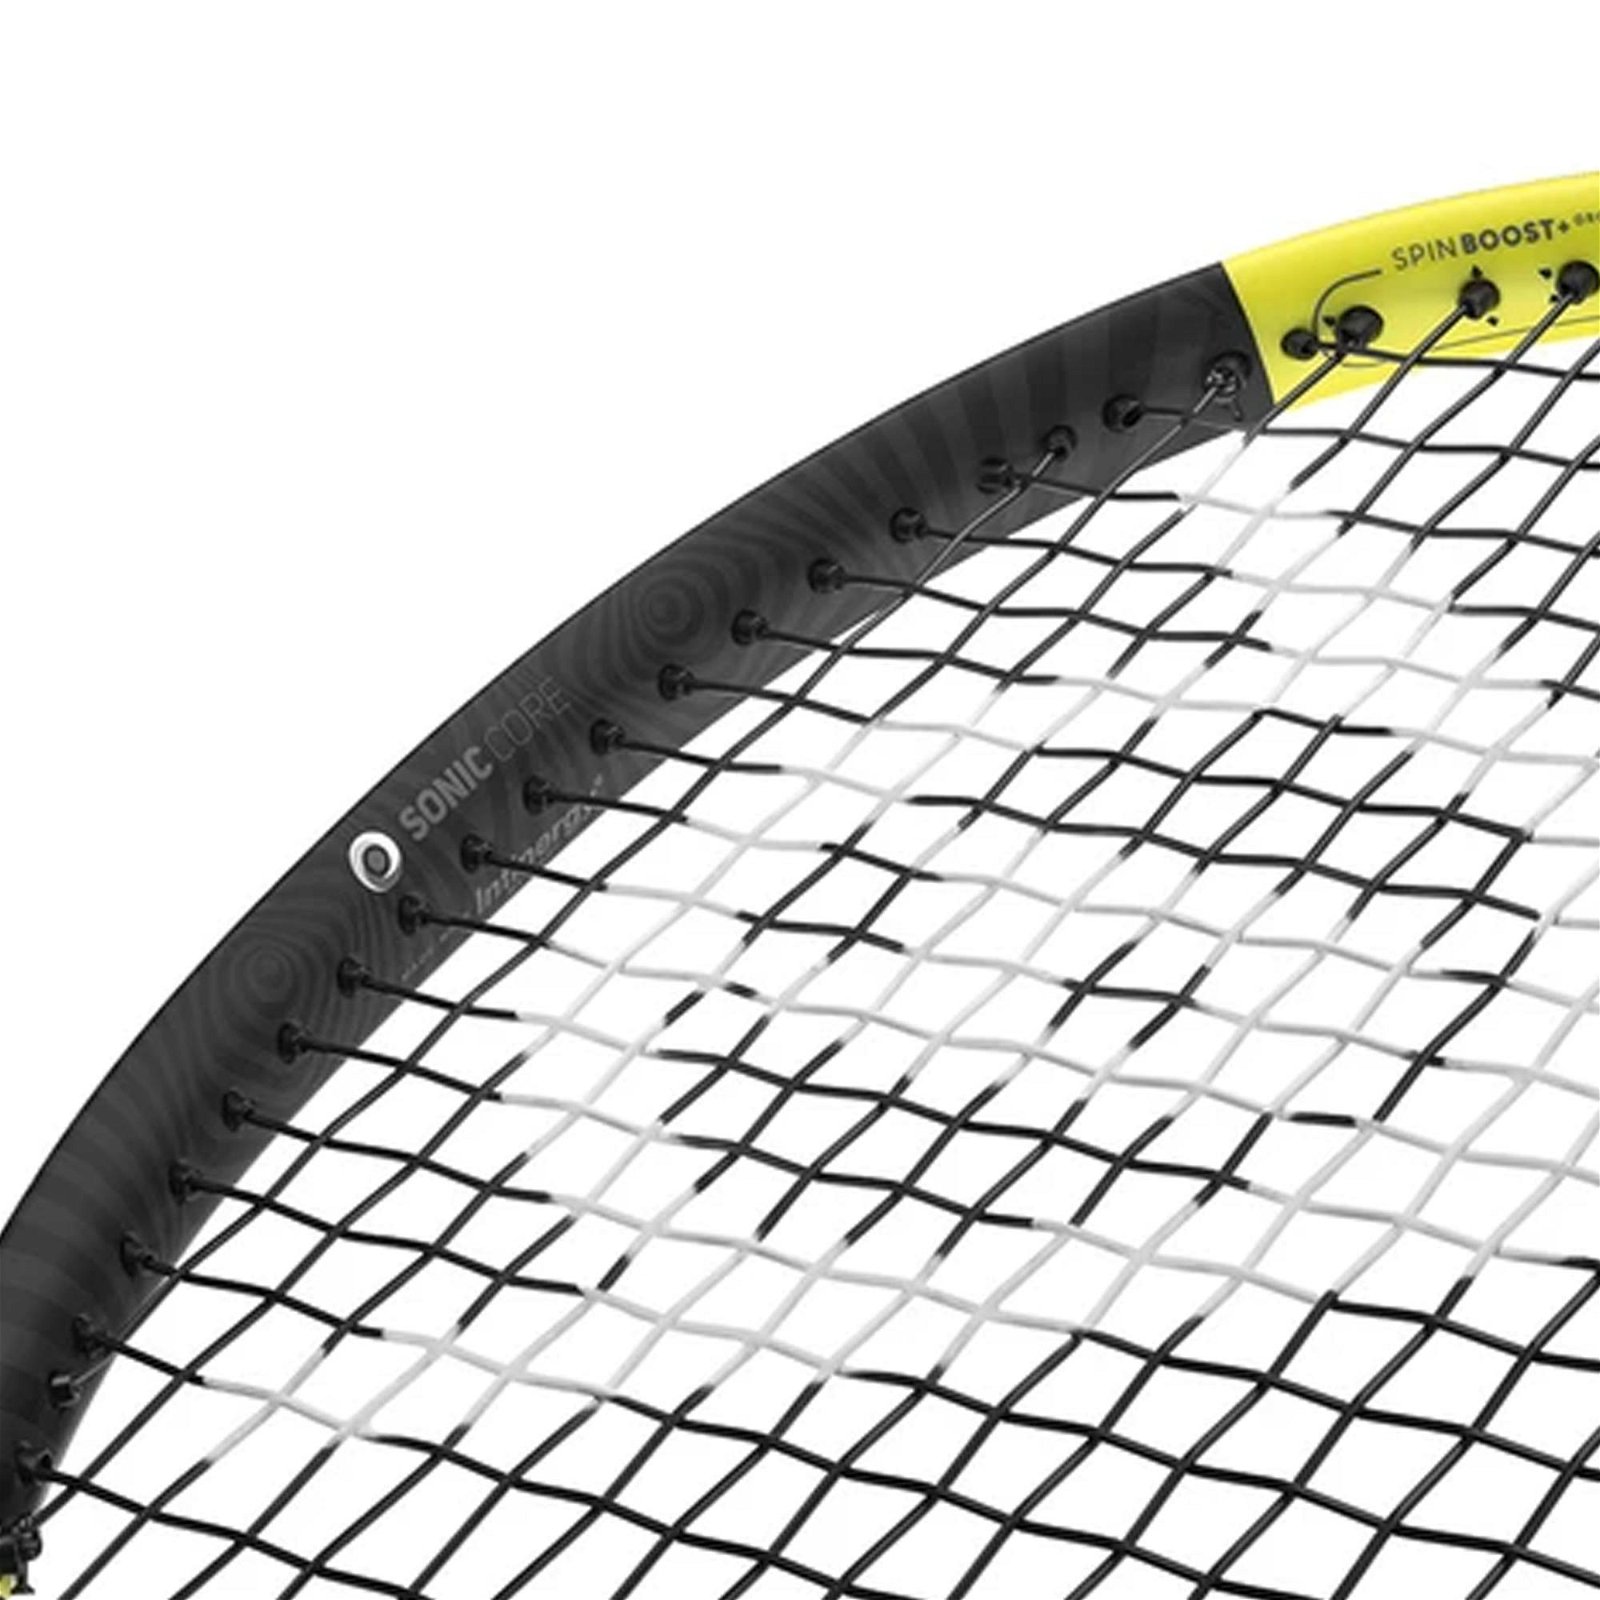 Dunlop SX300 LITE Tenis Raketi